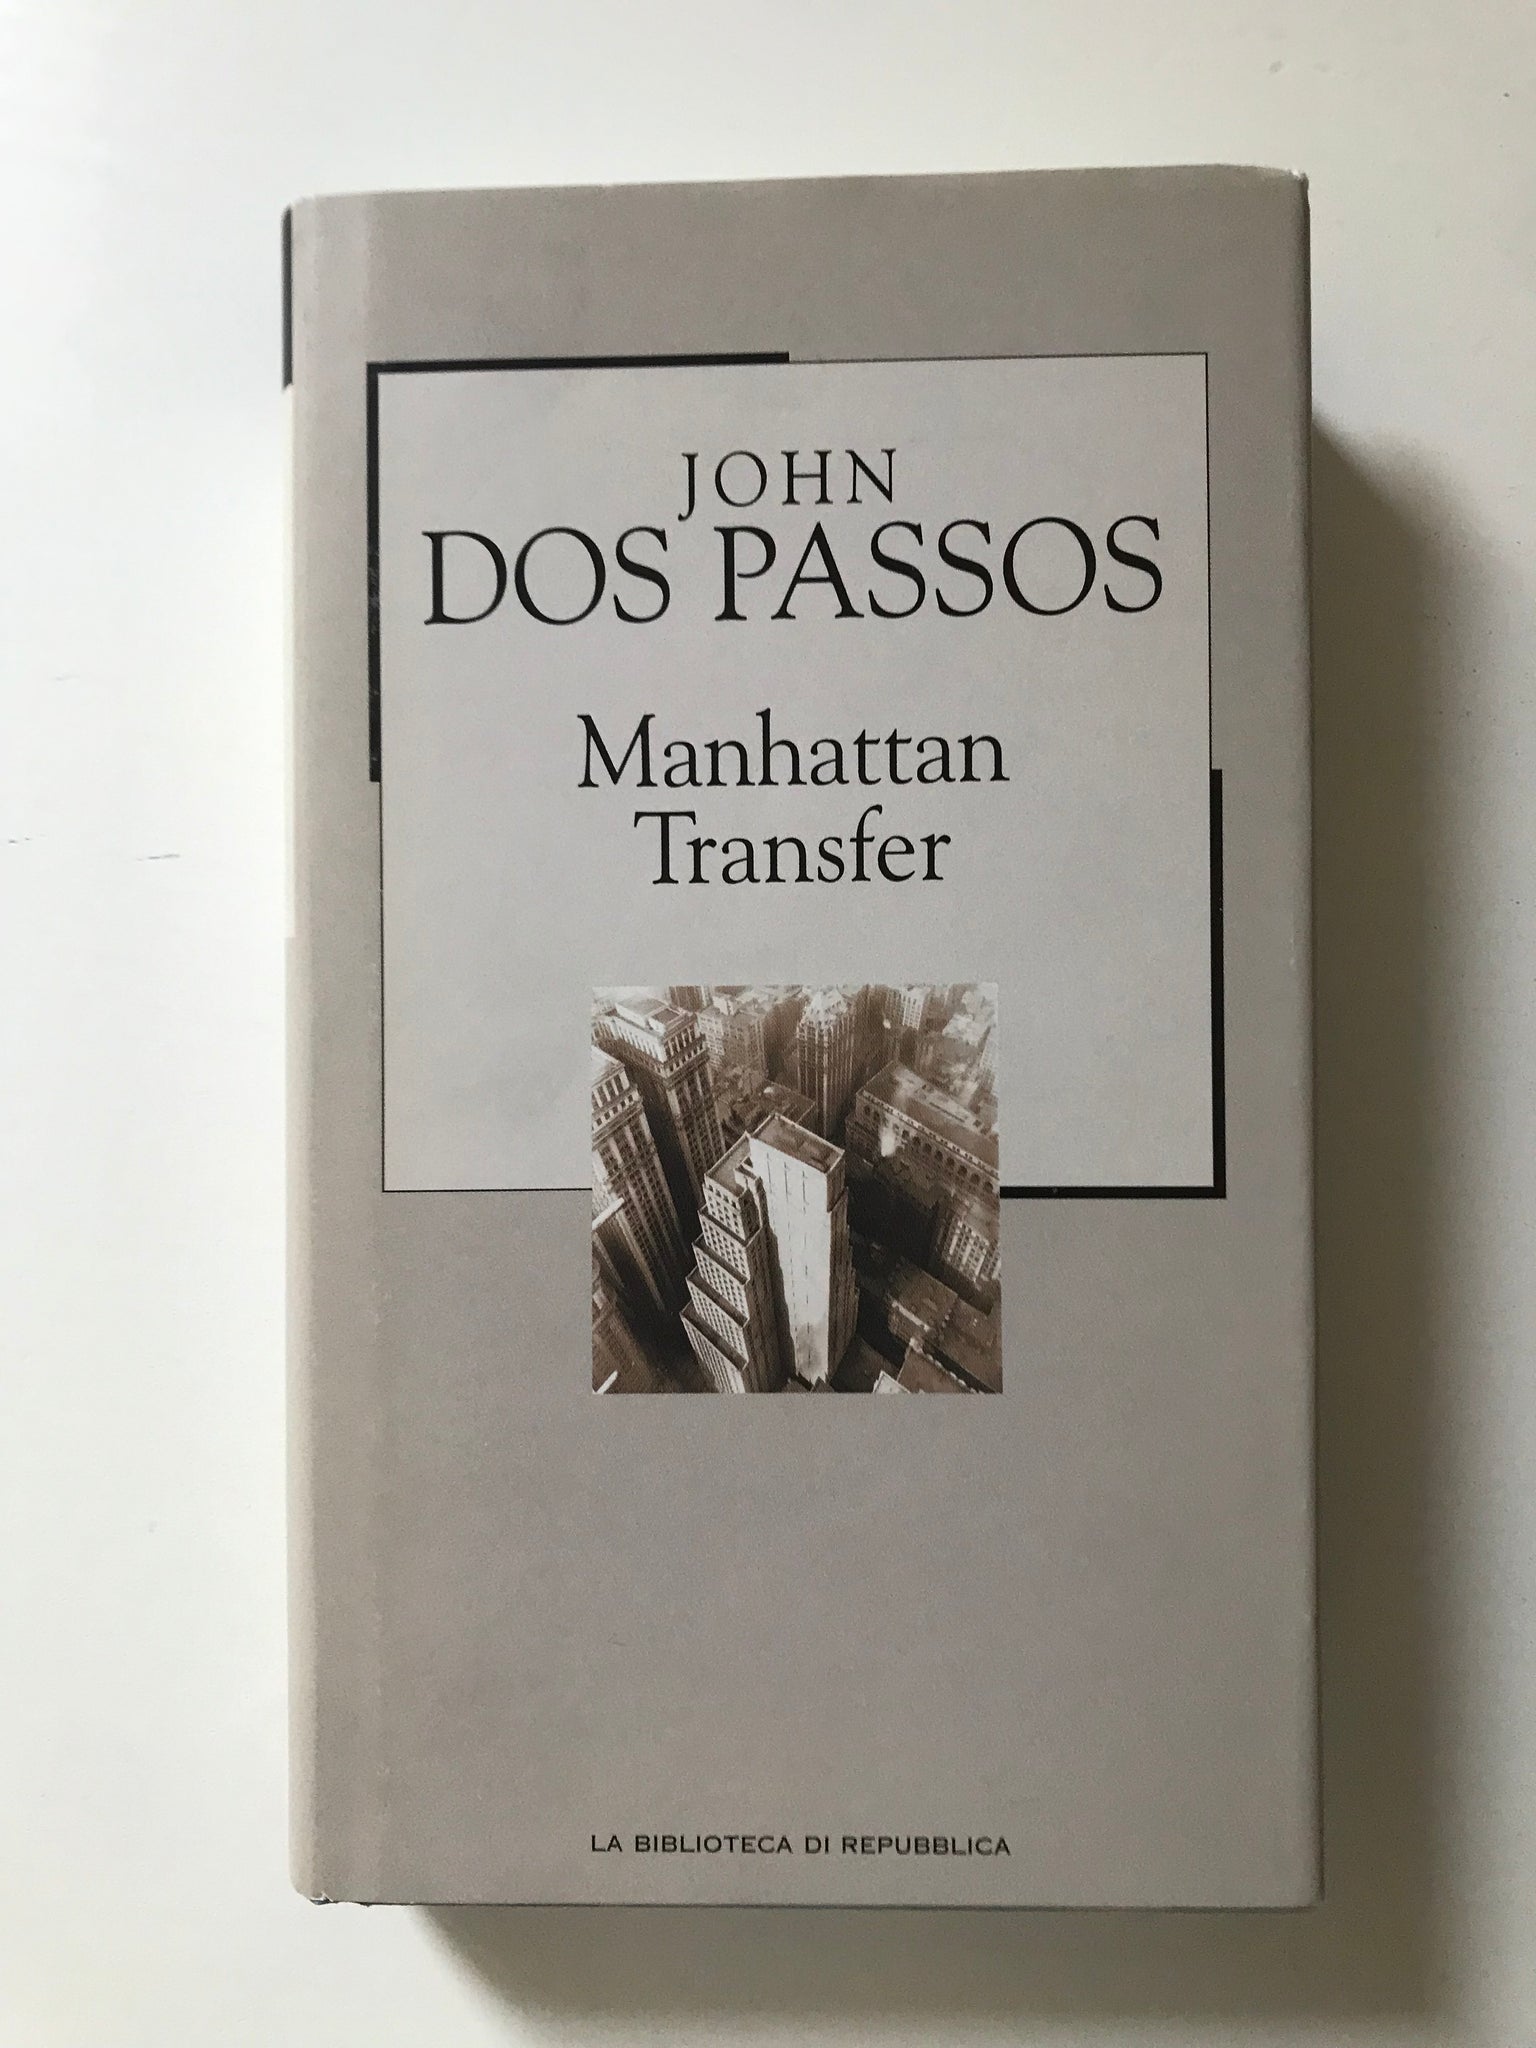 John Dos Passos - Manhattan Transfer